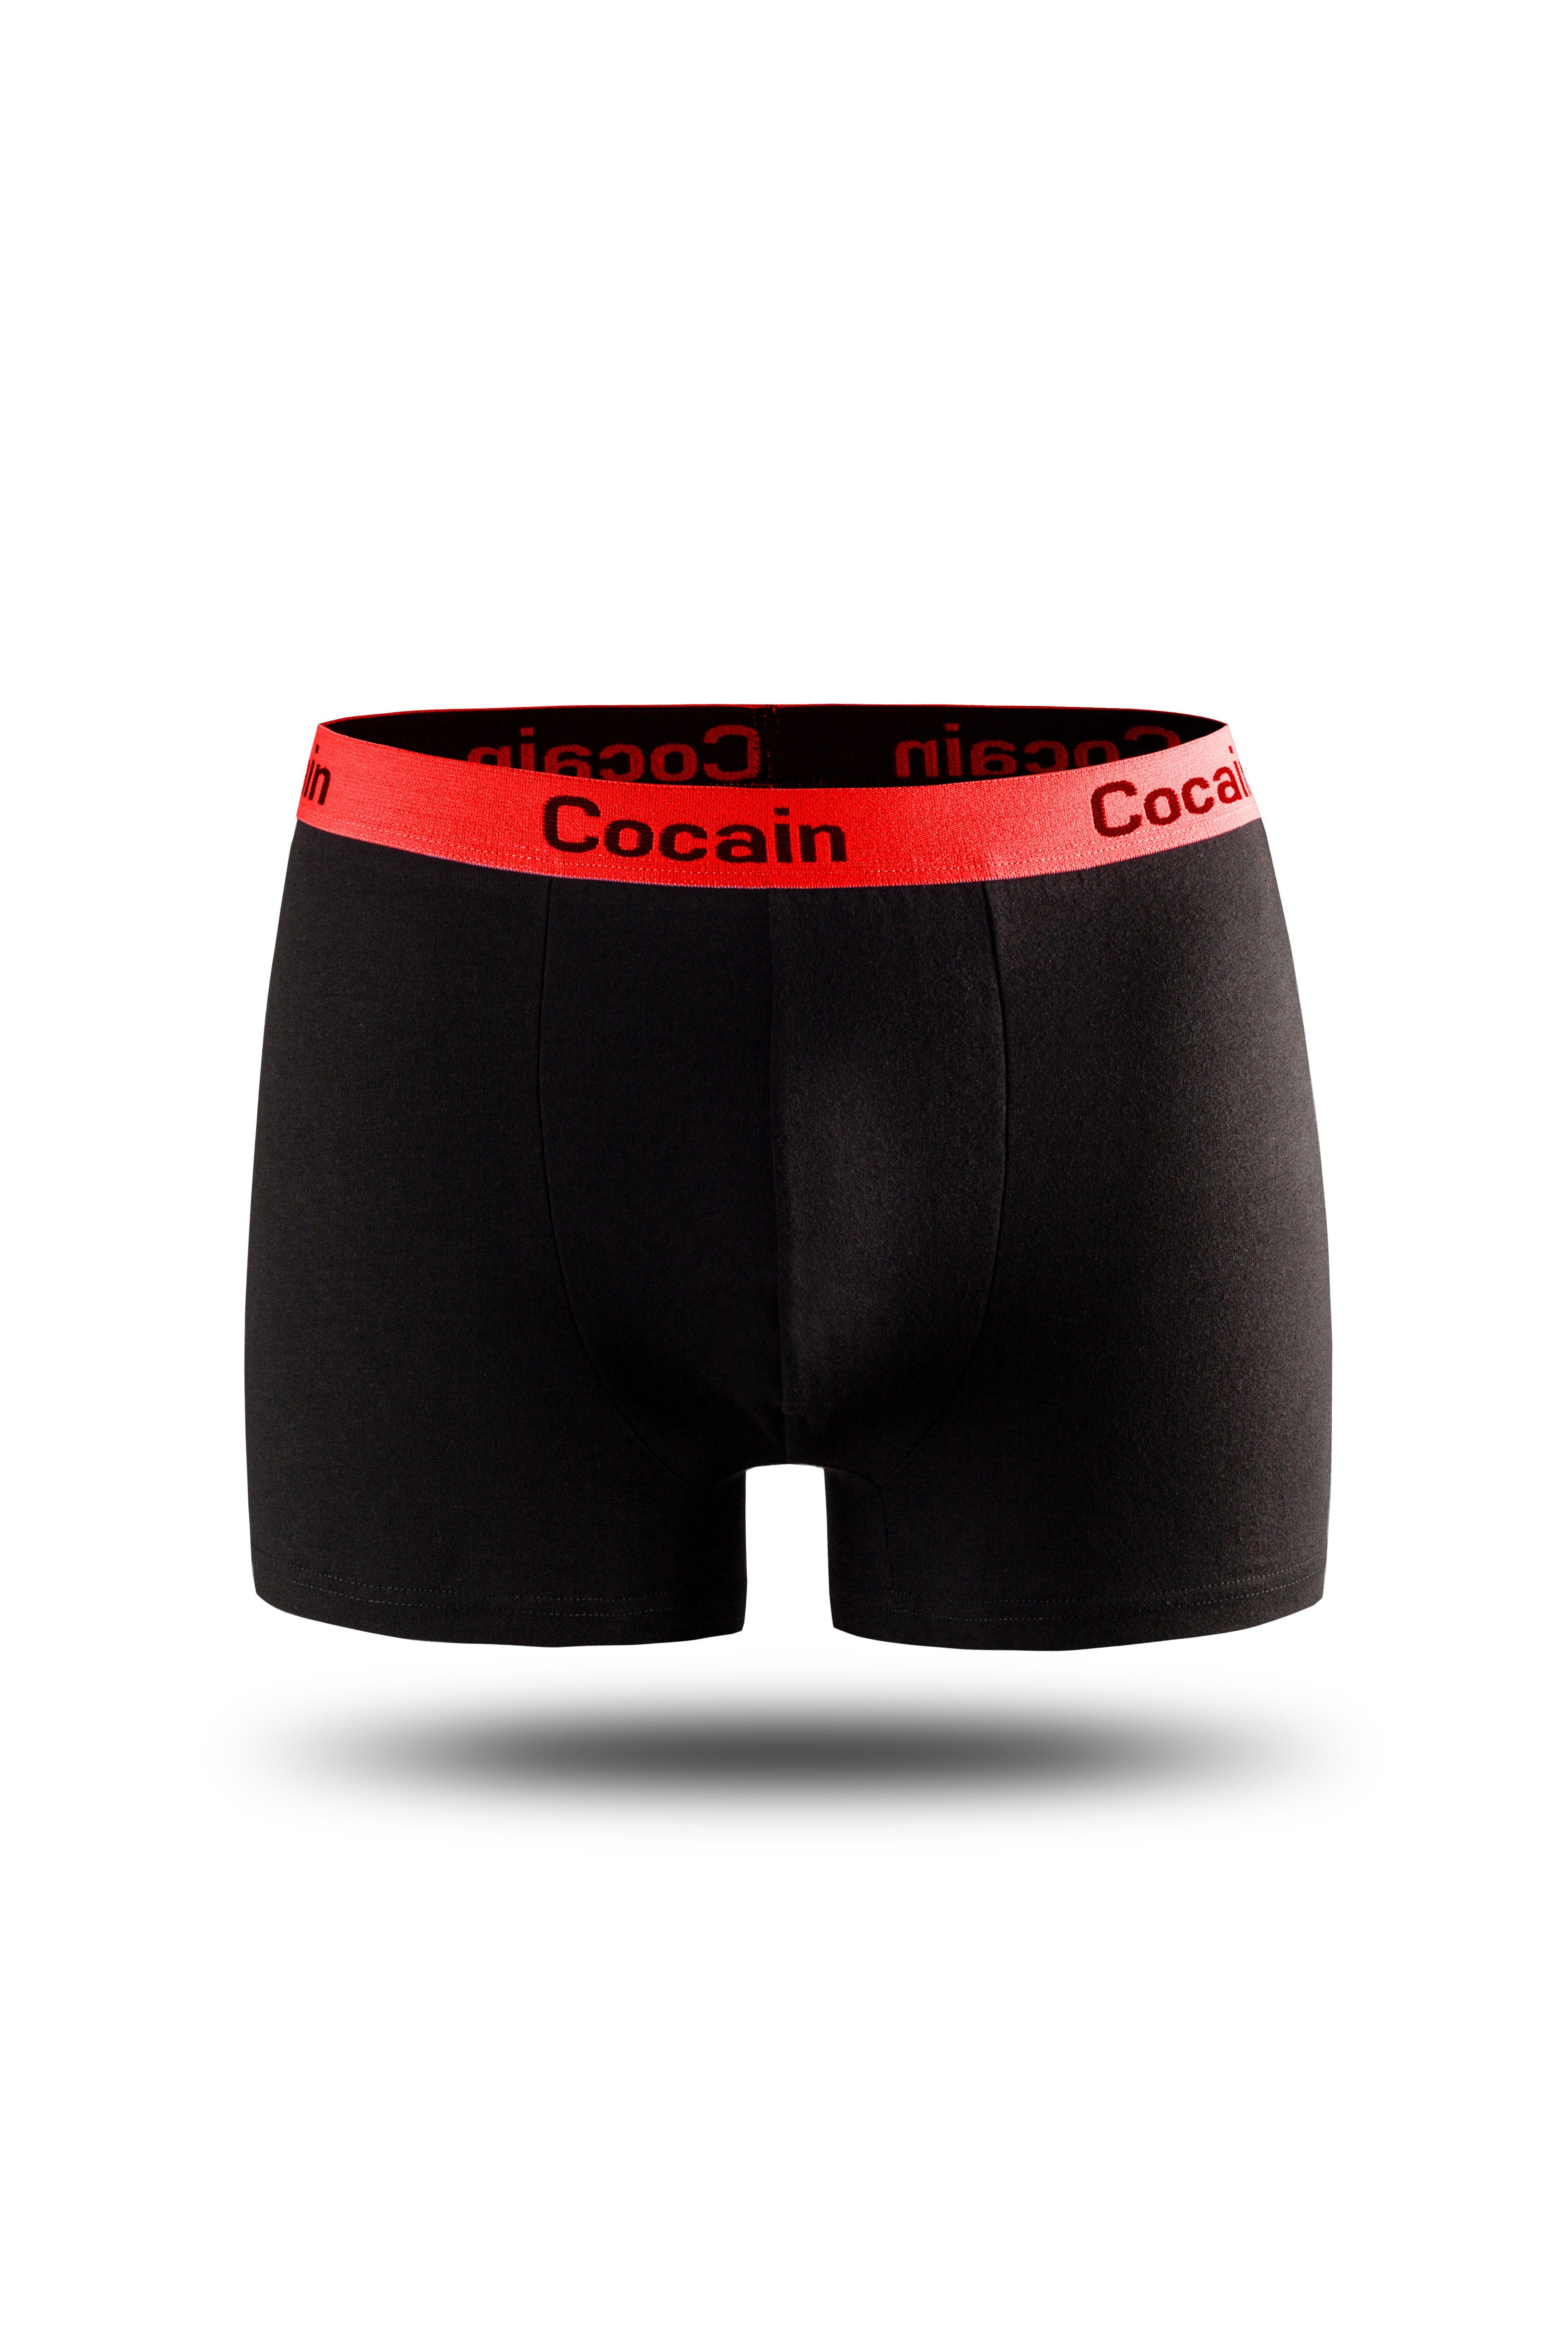 Cocain underwear Boxershorts schwarz Logoschriftzug 5er-Pack) mit Herren farbigem Europa aus (5-St., Bund am Boxershorts Spitzenqualität Bund